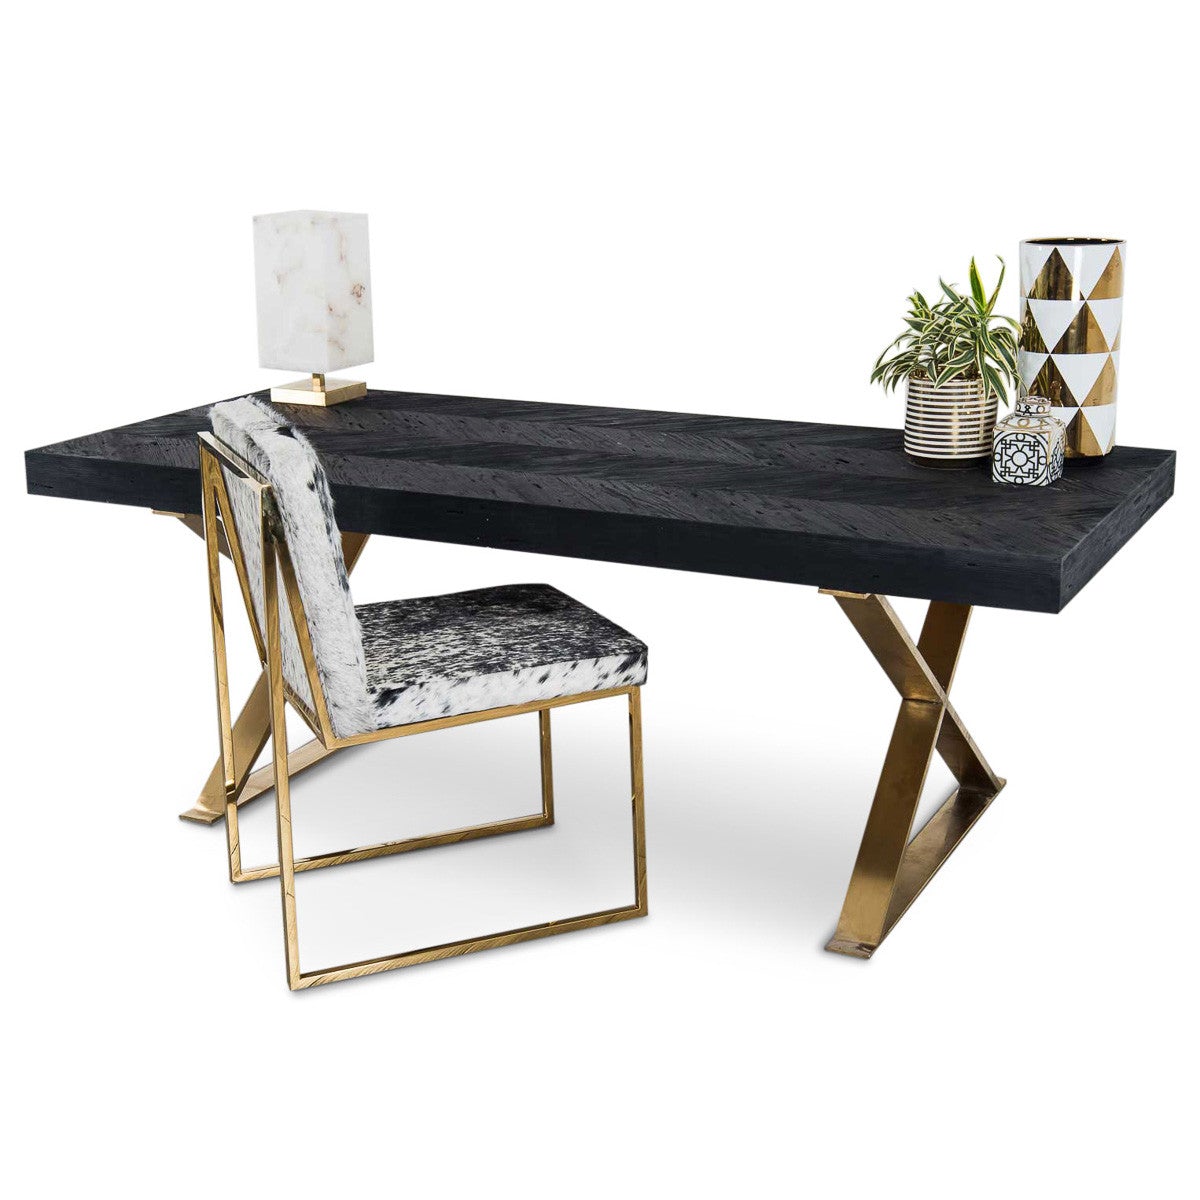 Bordeaux Desk with Brass X-Legs - ModShop1.com